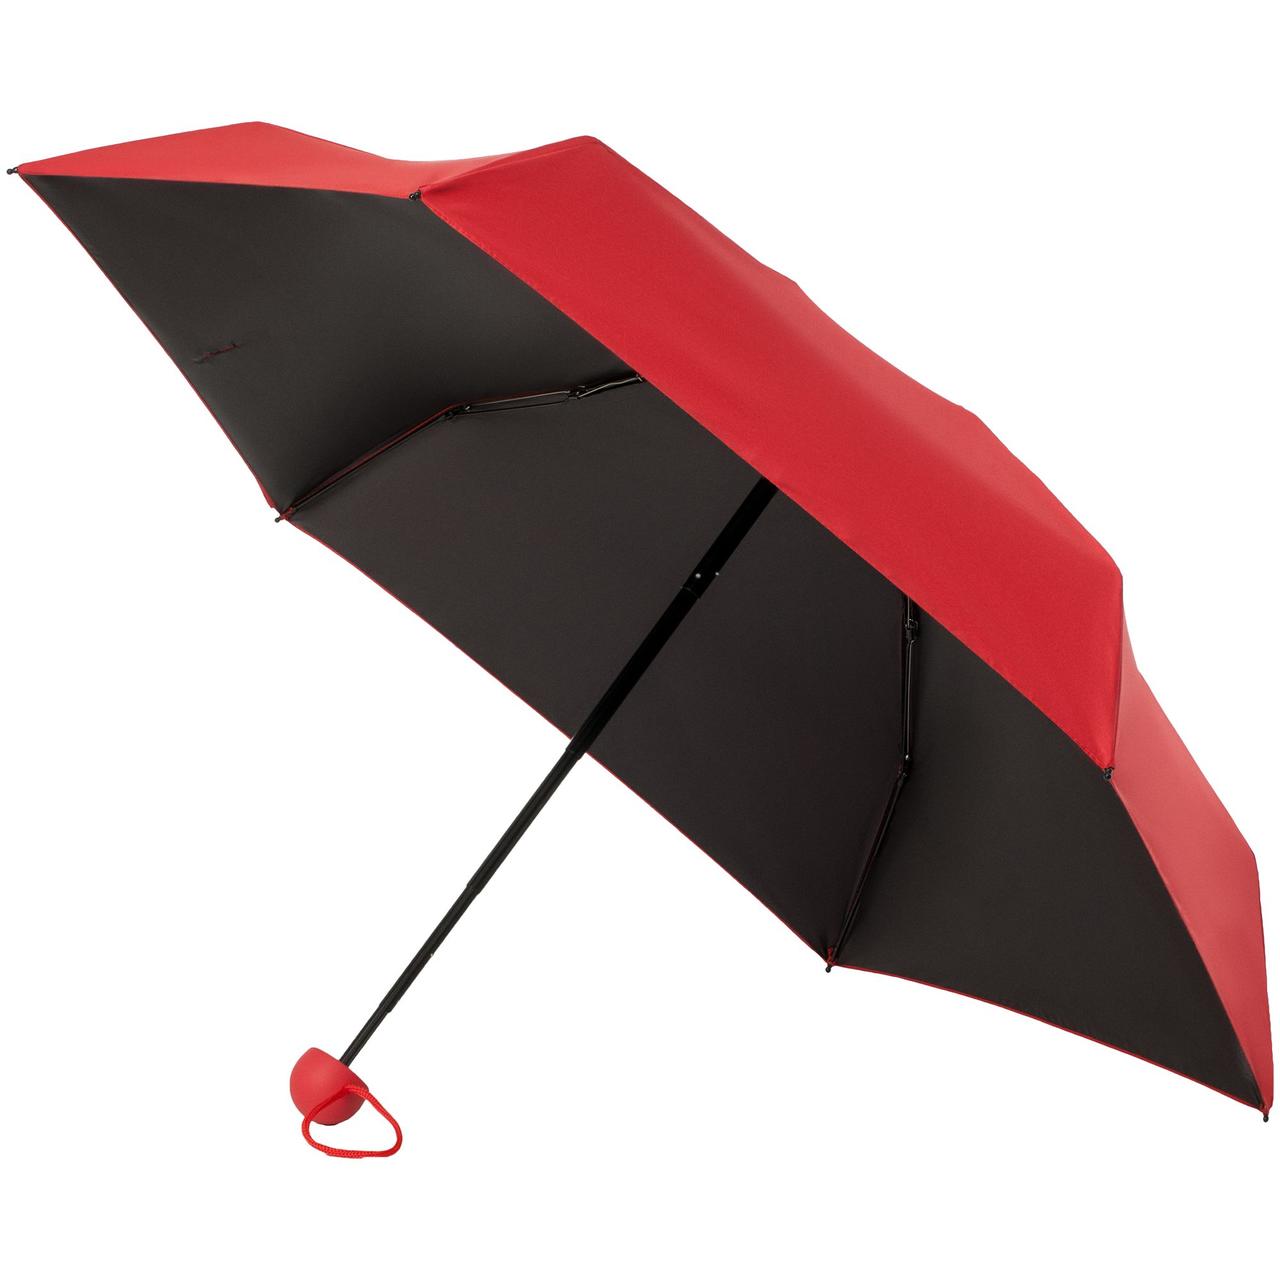 Складной зонт Cameo, механический, красный (артикул 12370.50), фото 1